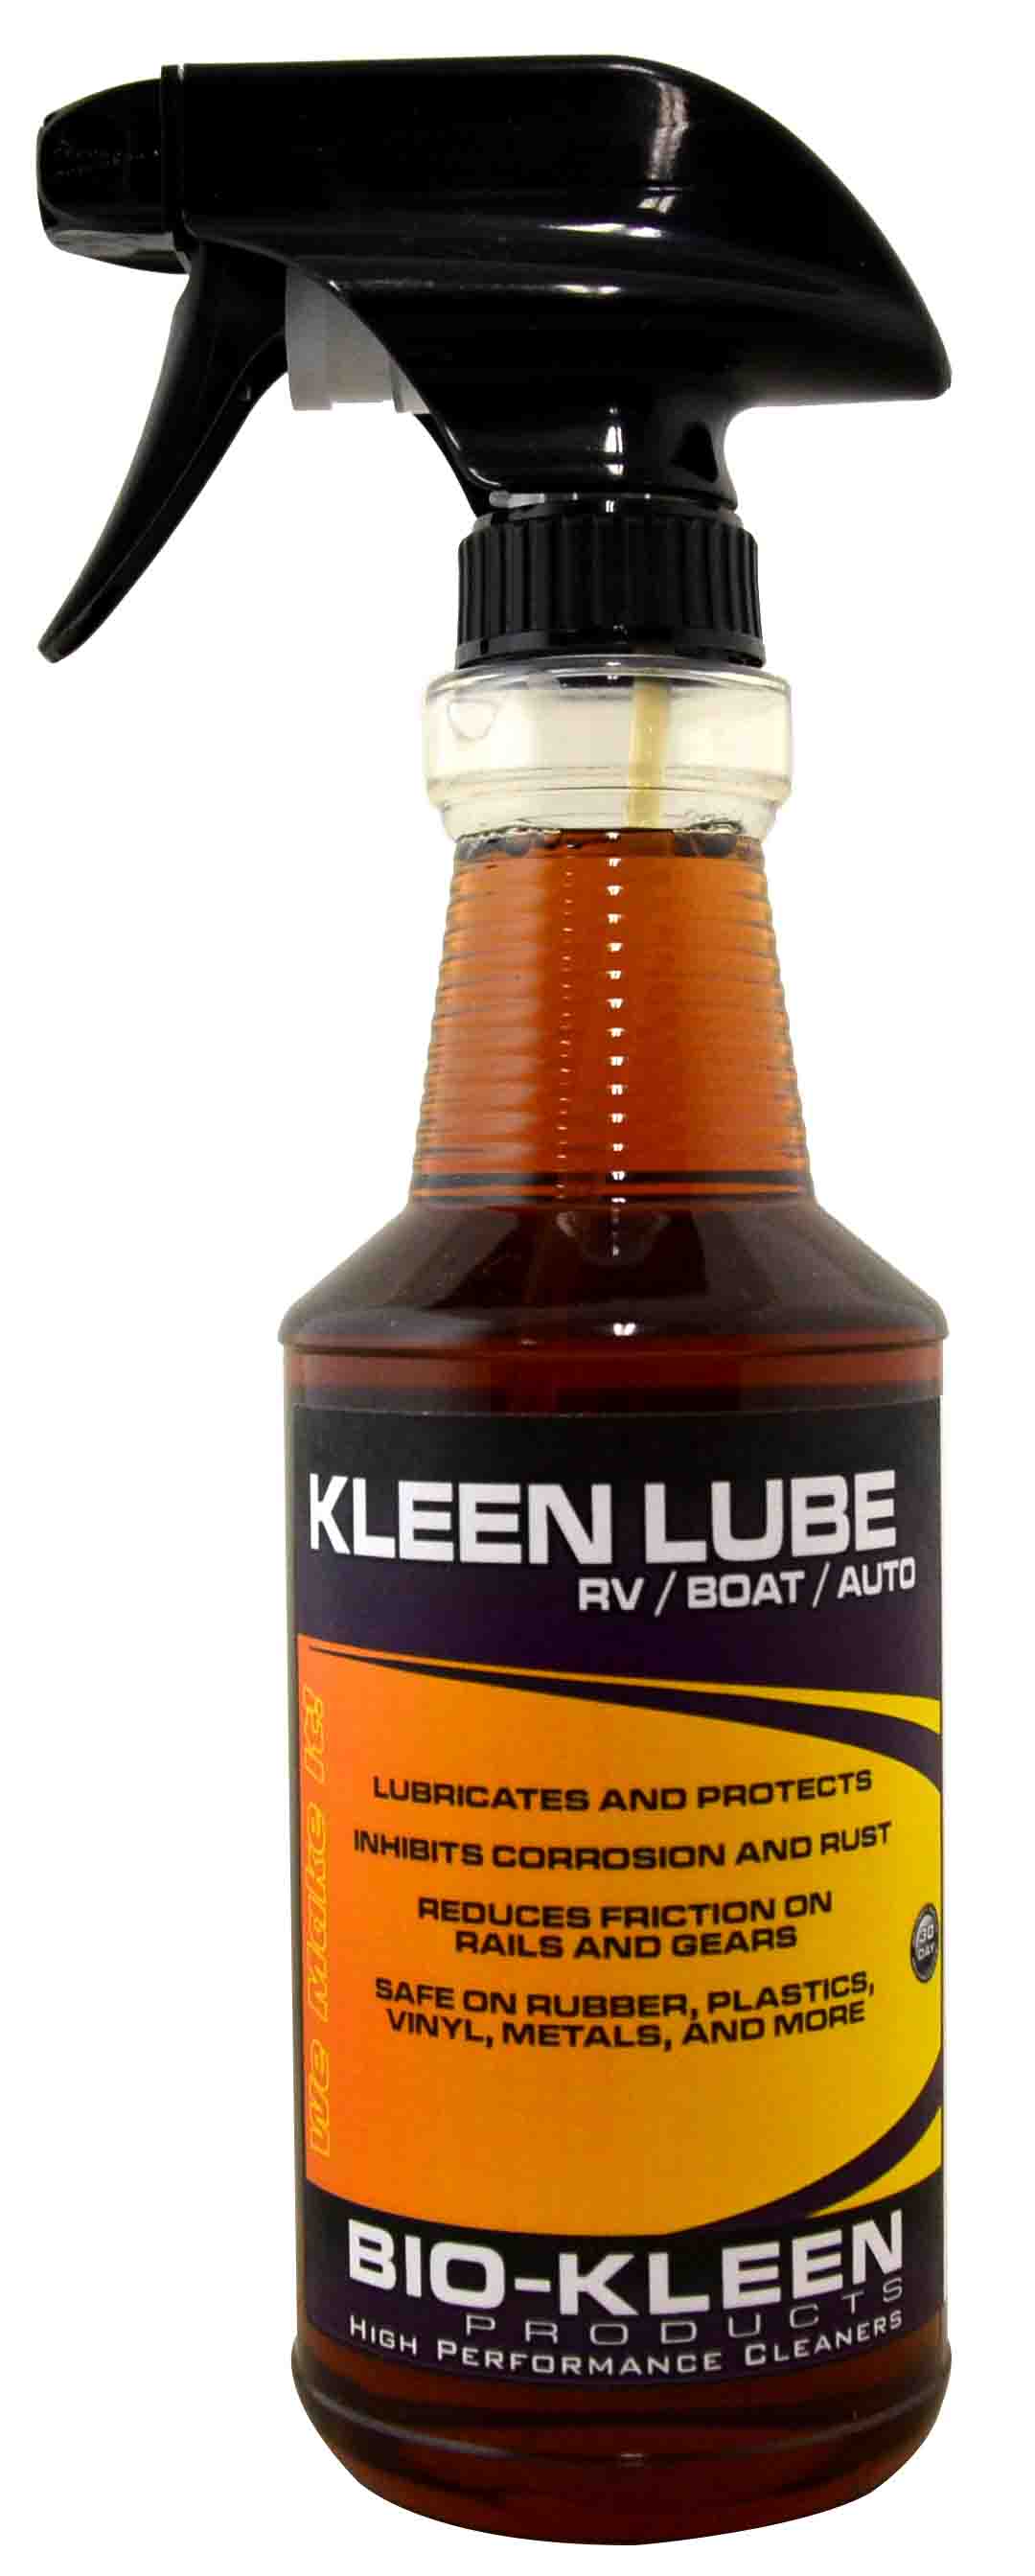 Kleen Lube kleen lube, lubrication, equipment lubrication, gears, hinges, squeaky hinges, locks, rails, rv slides, 